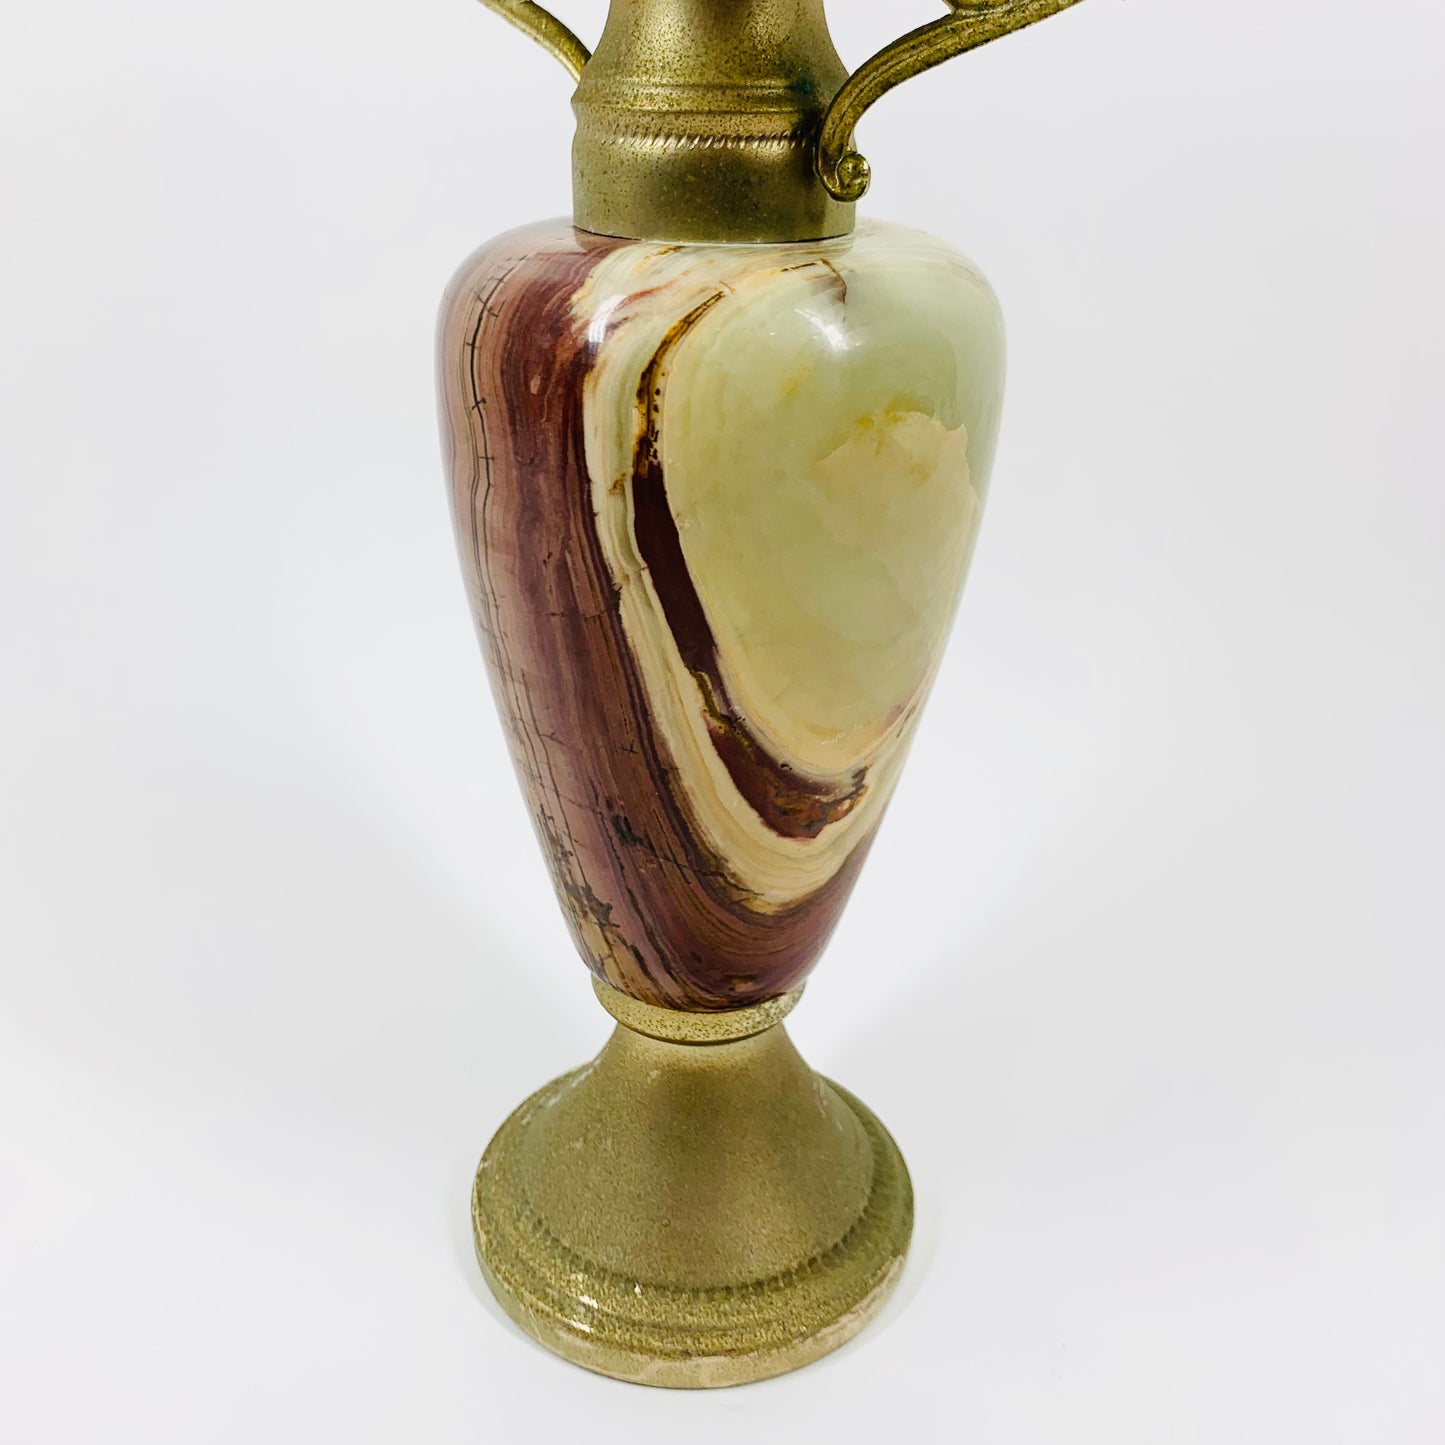 Antique onyx amphora candle holder/oil burner